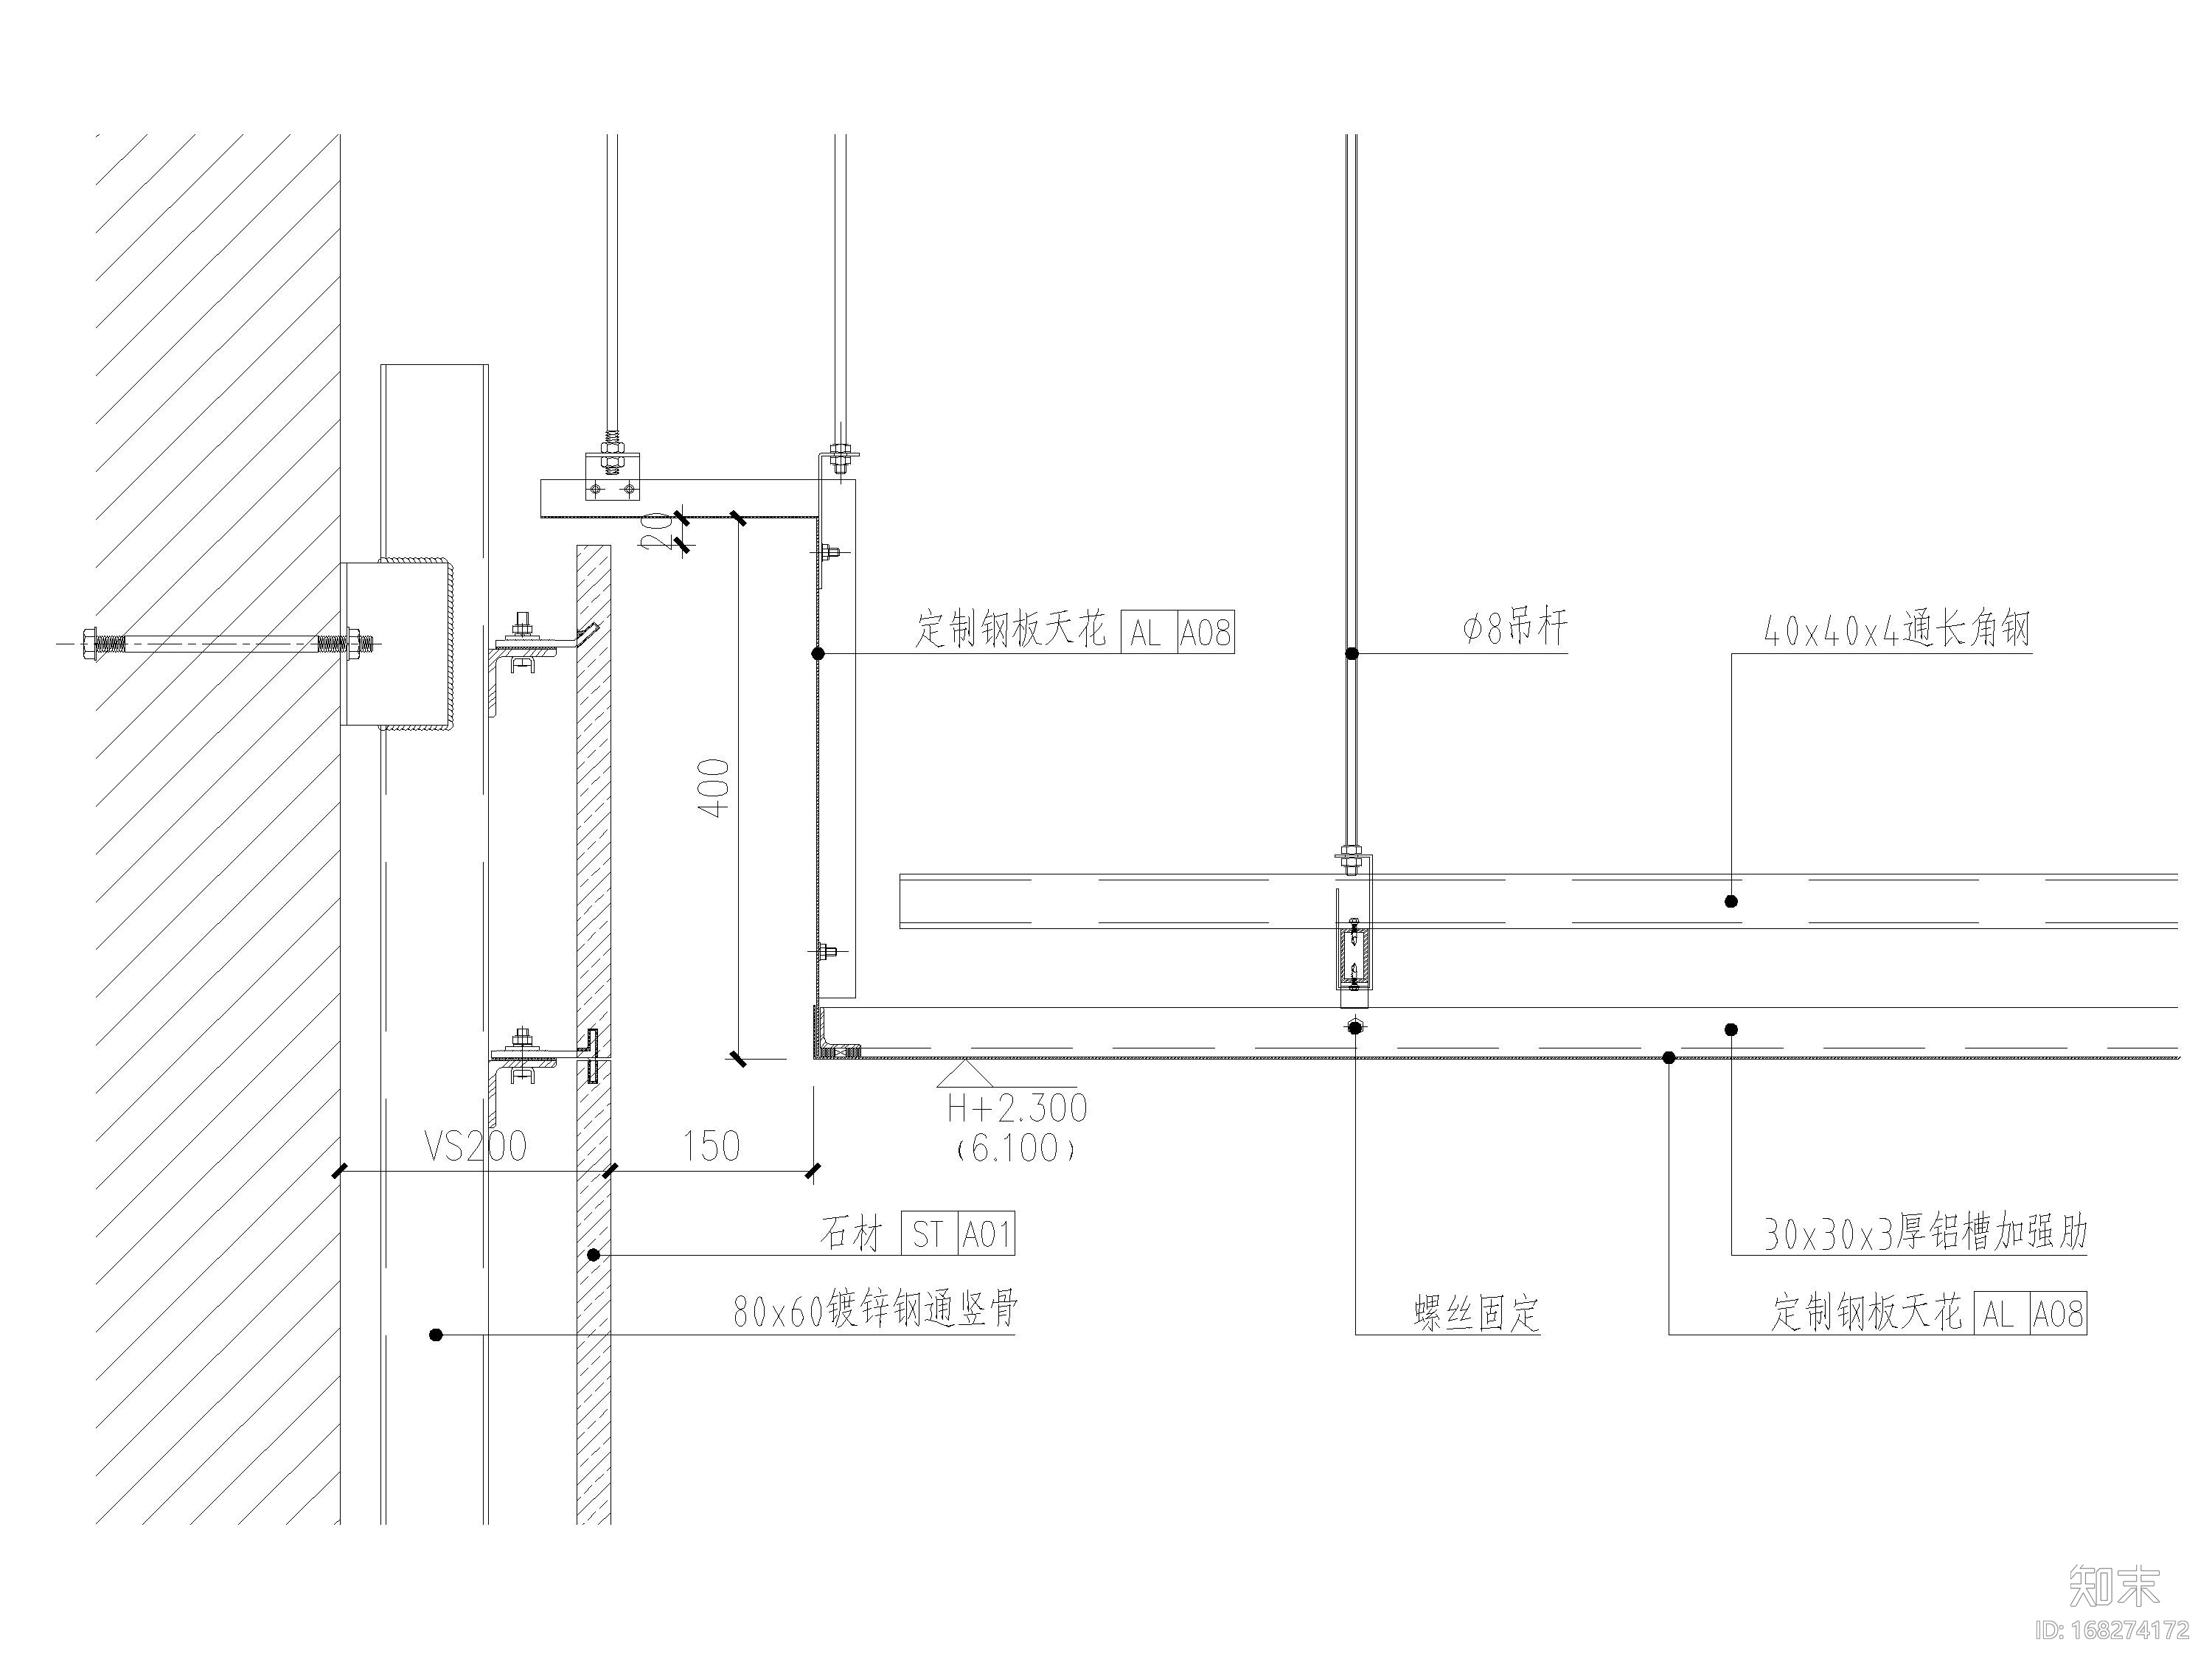 石膏板钢板铝板铝格栅天花吊顶节点图施工图下载